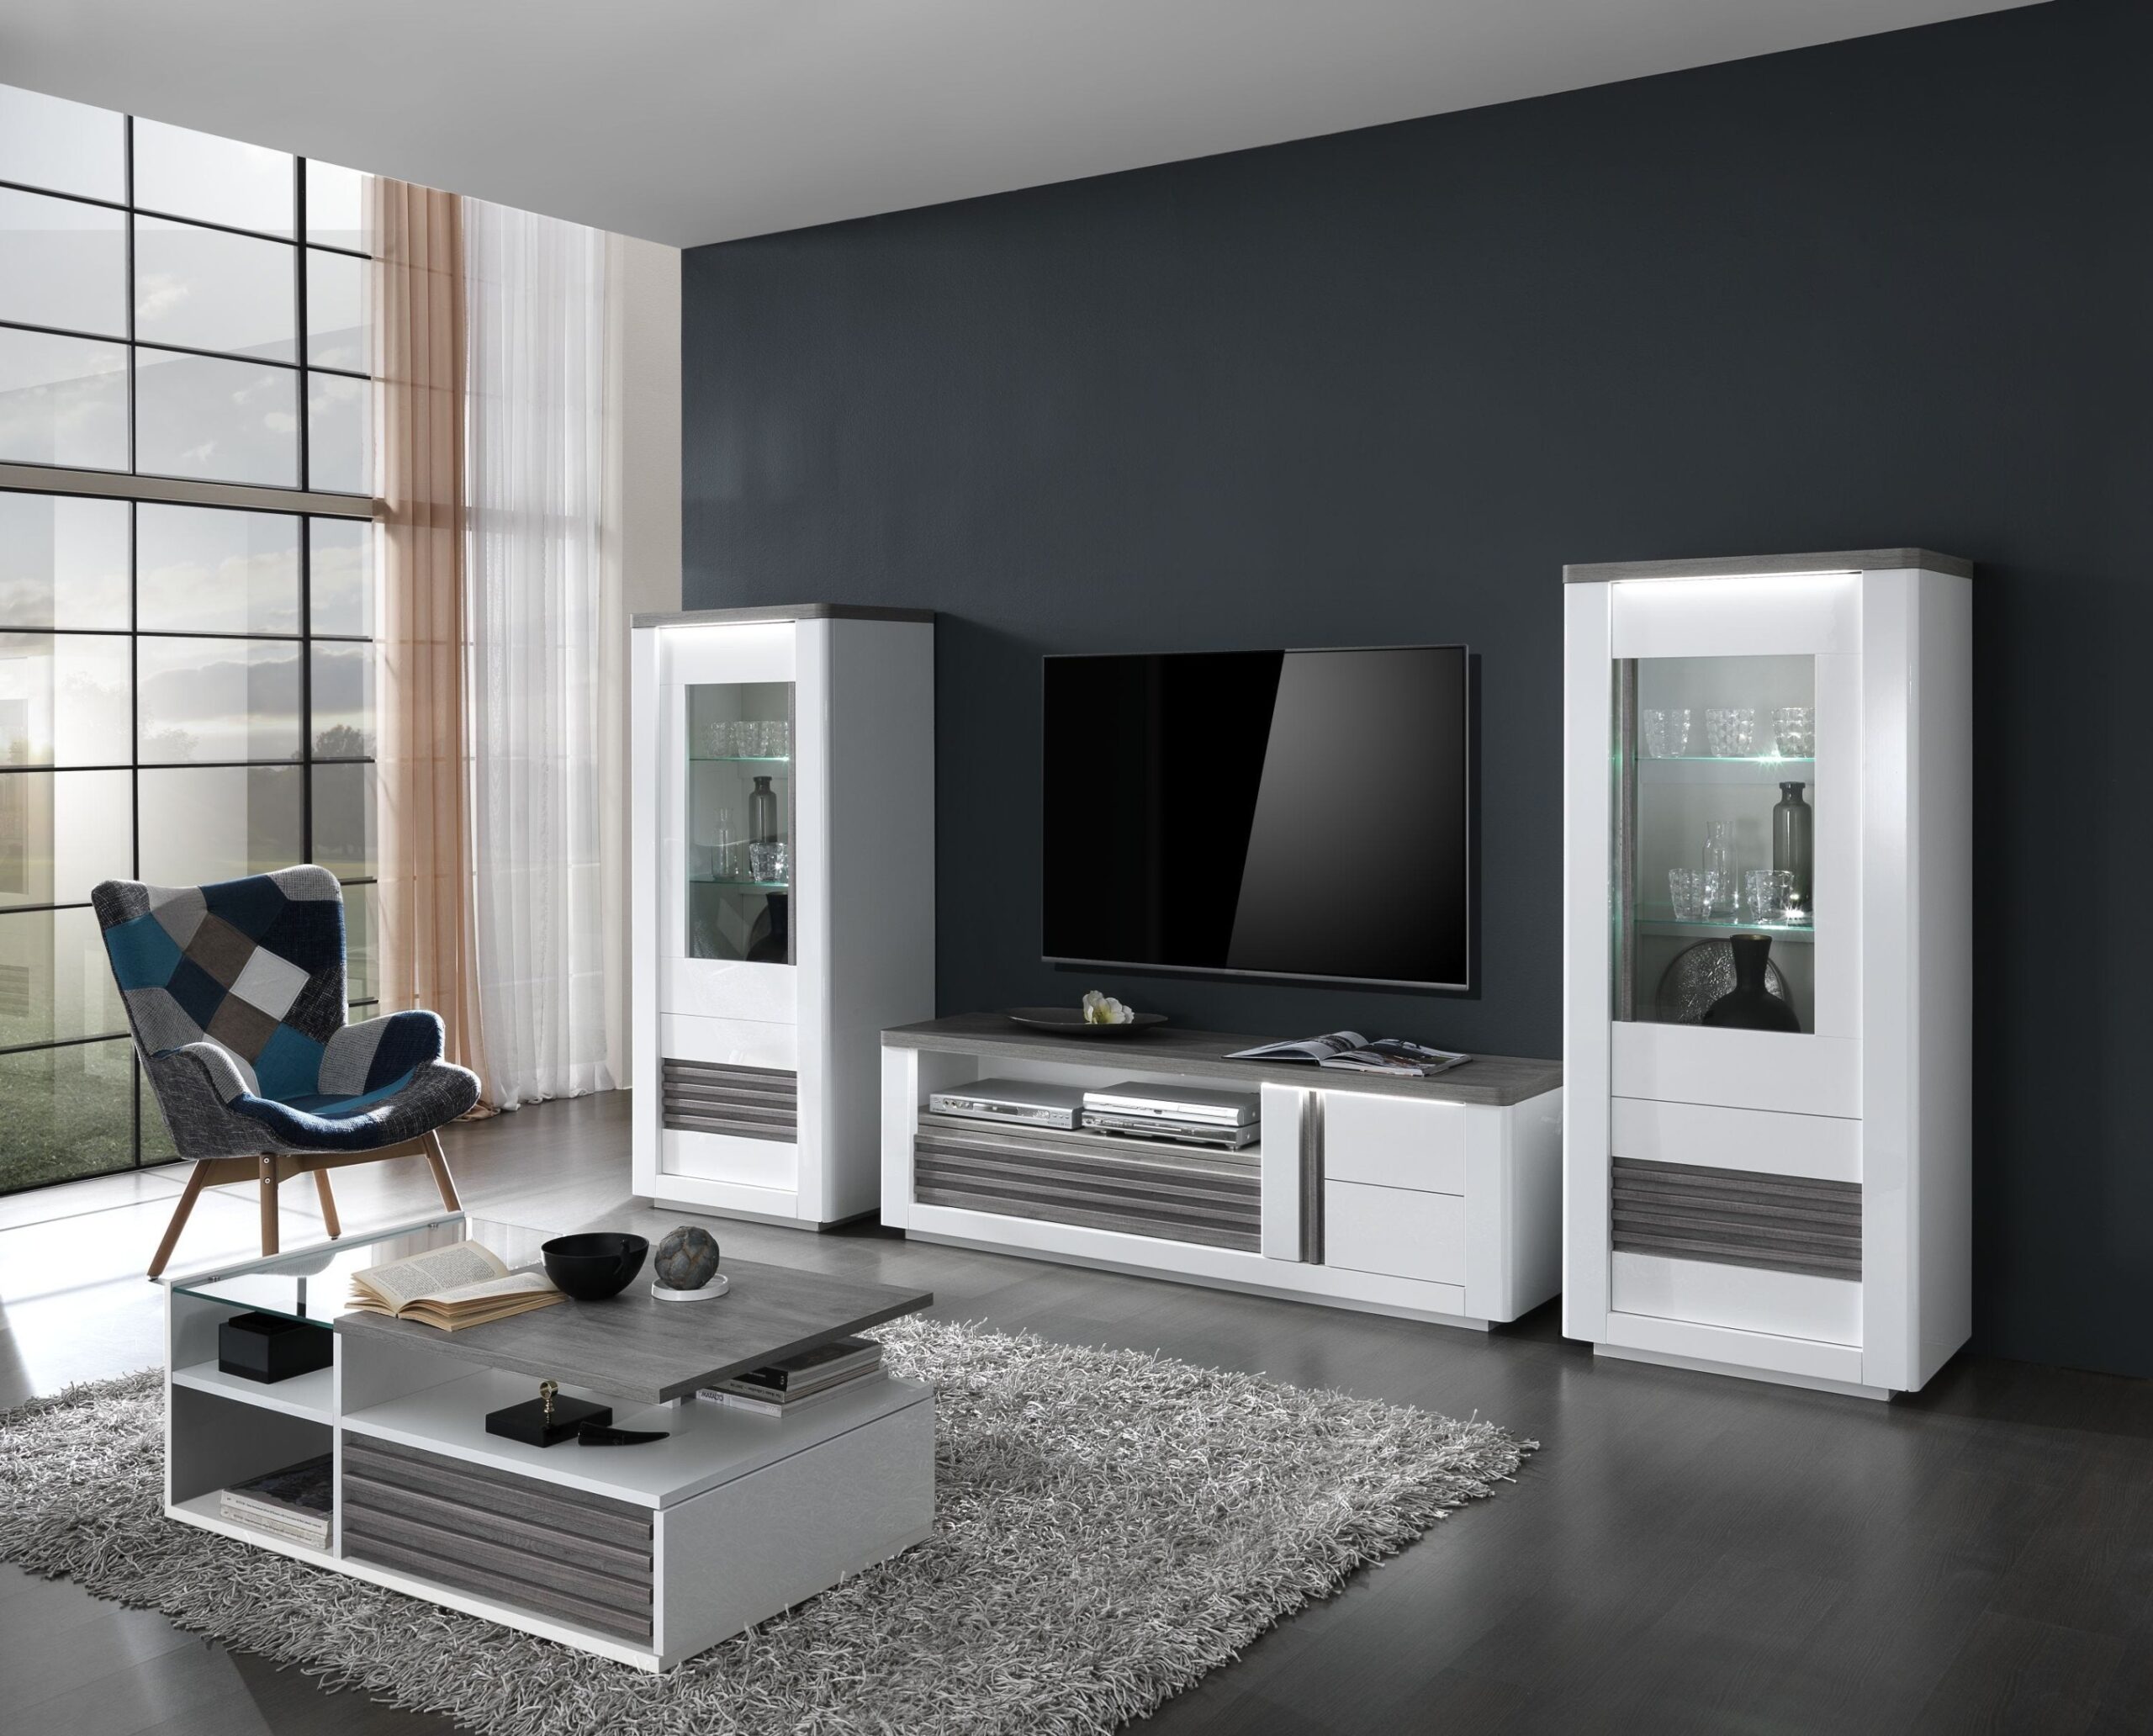 Come rinnovare il soggiorno con mobili in Puro Stile Italiano